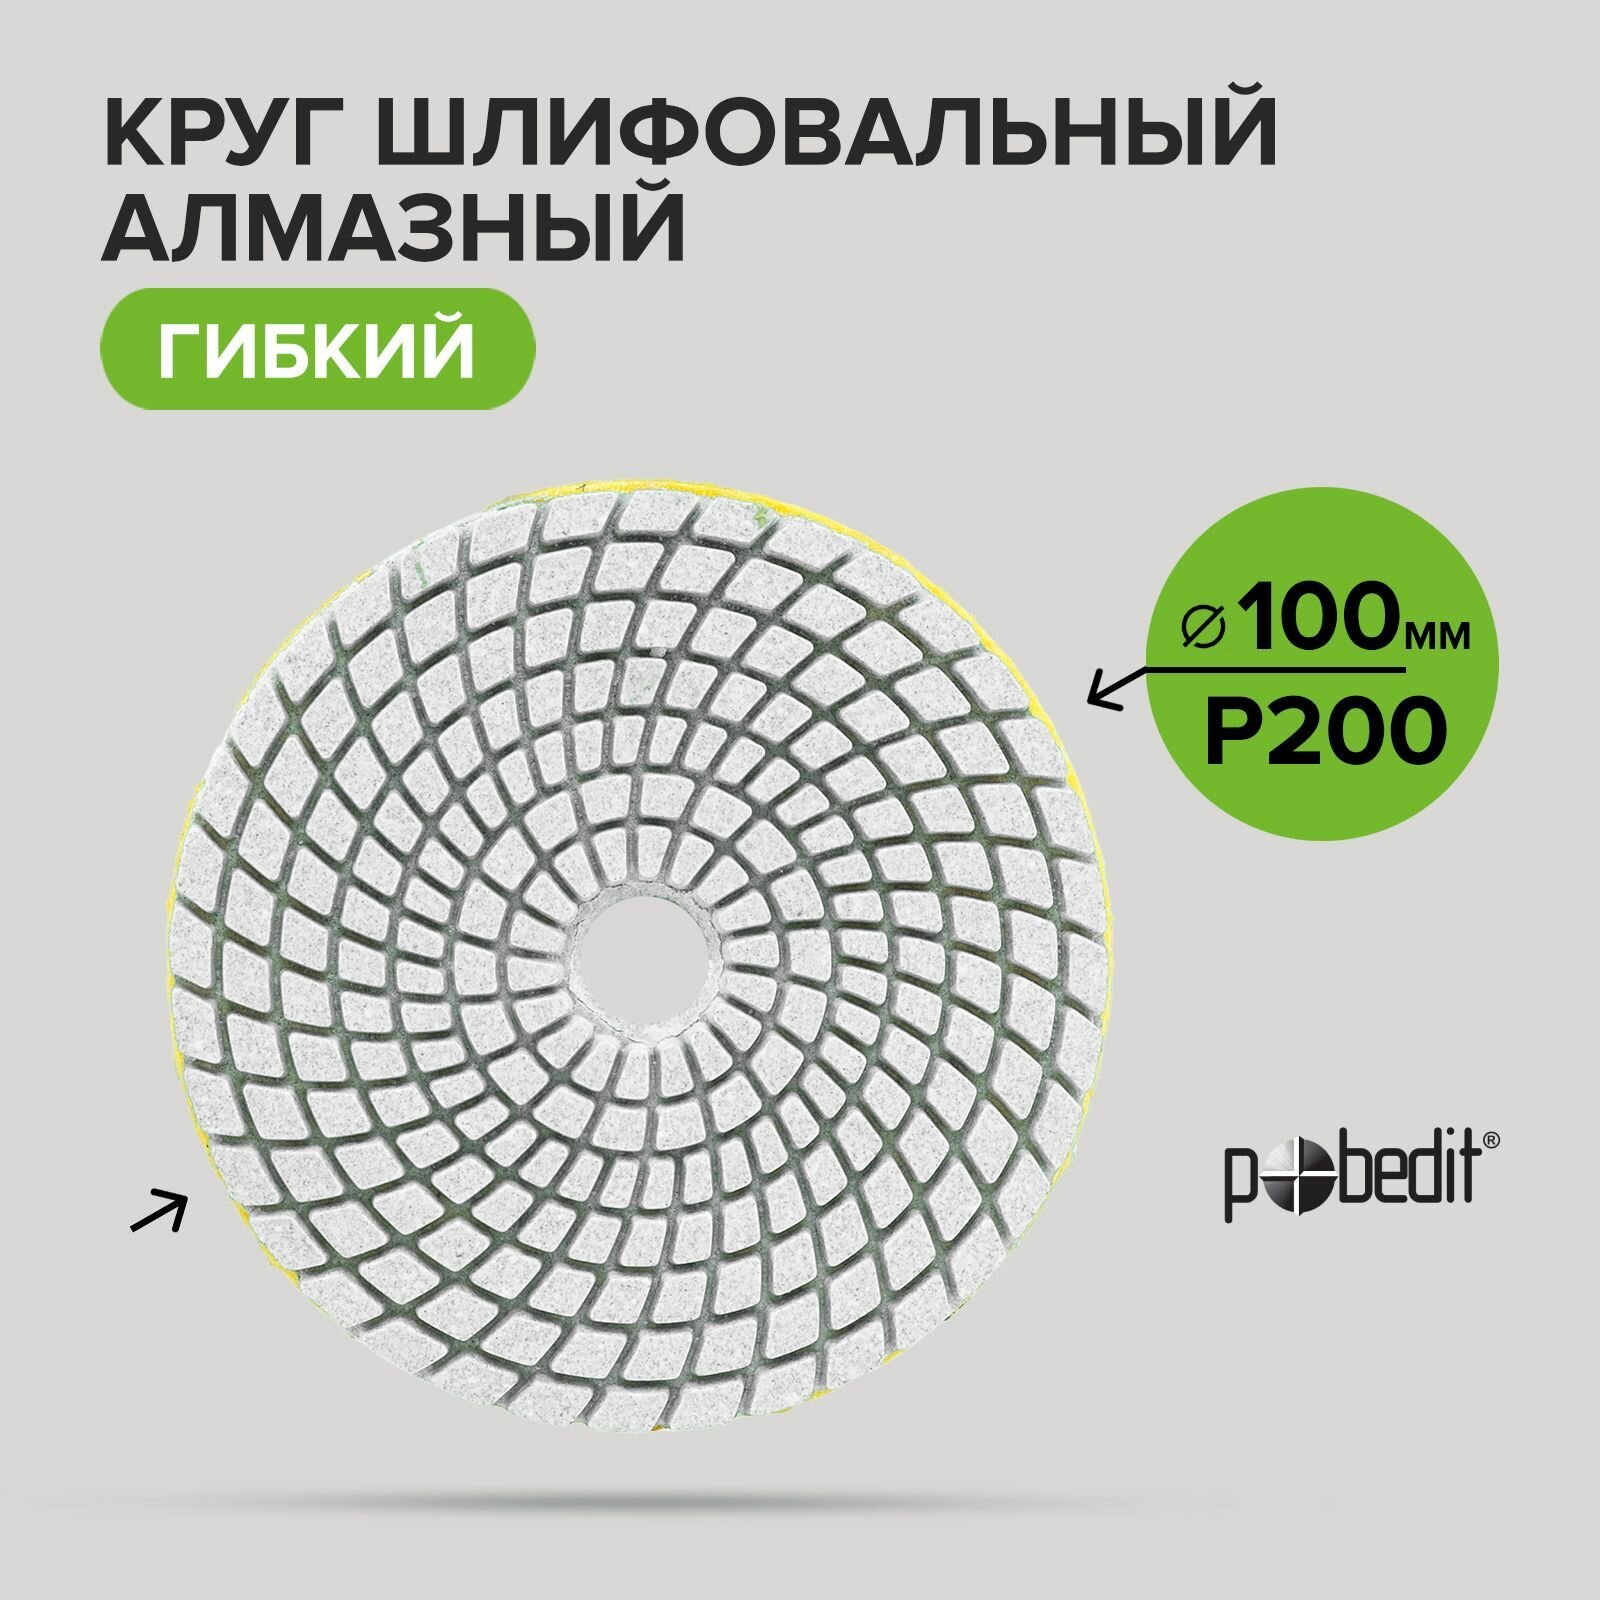 Алмазный гибкий шлифовальный круг черепашка мокрое шлифование Pobedit 100 мм Р200